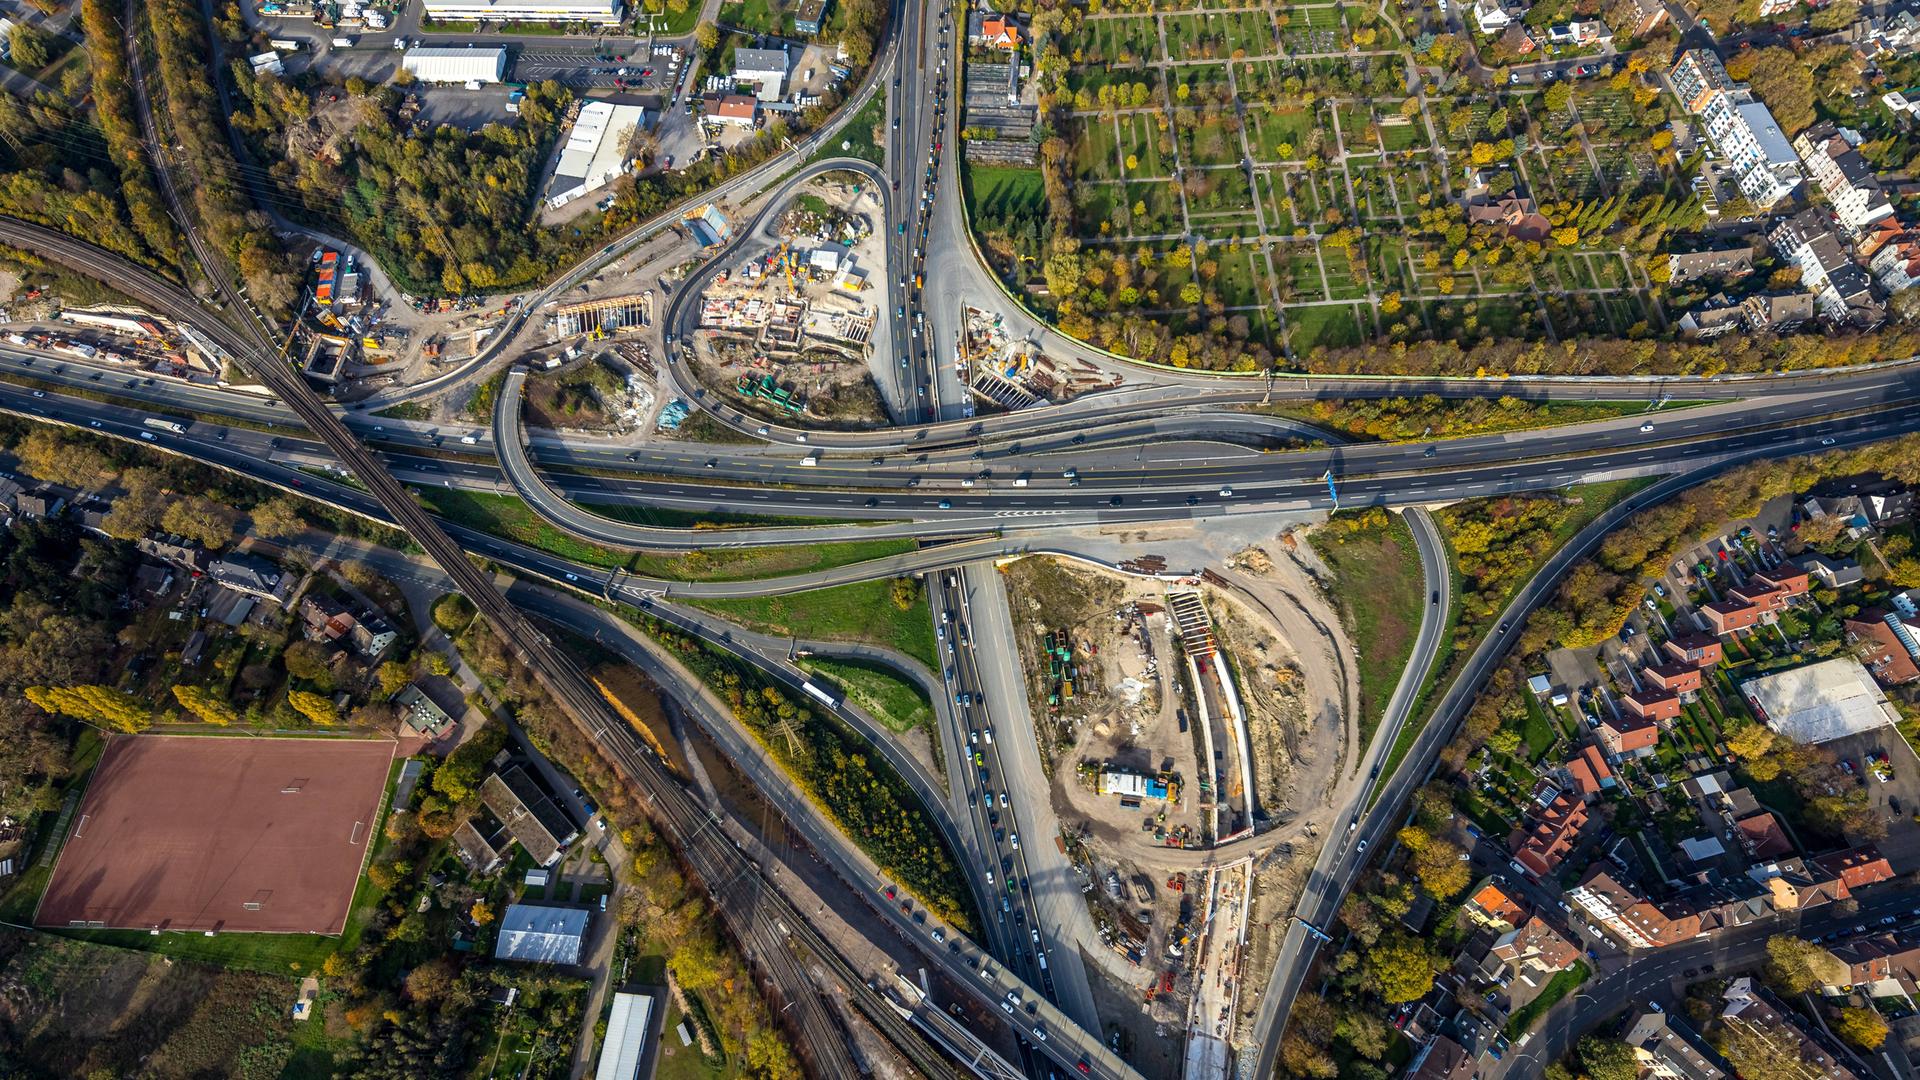 Luftaufnahme des Autobahnkreuz Herne: Ineinander verschlungene Autobahnen mit einer Großbaustelle.